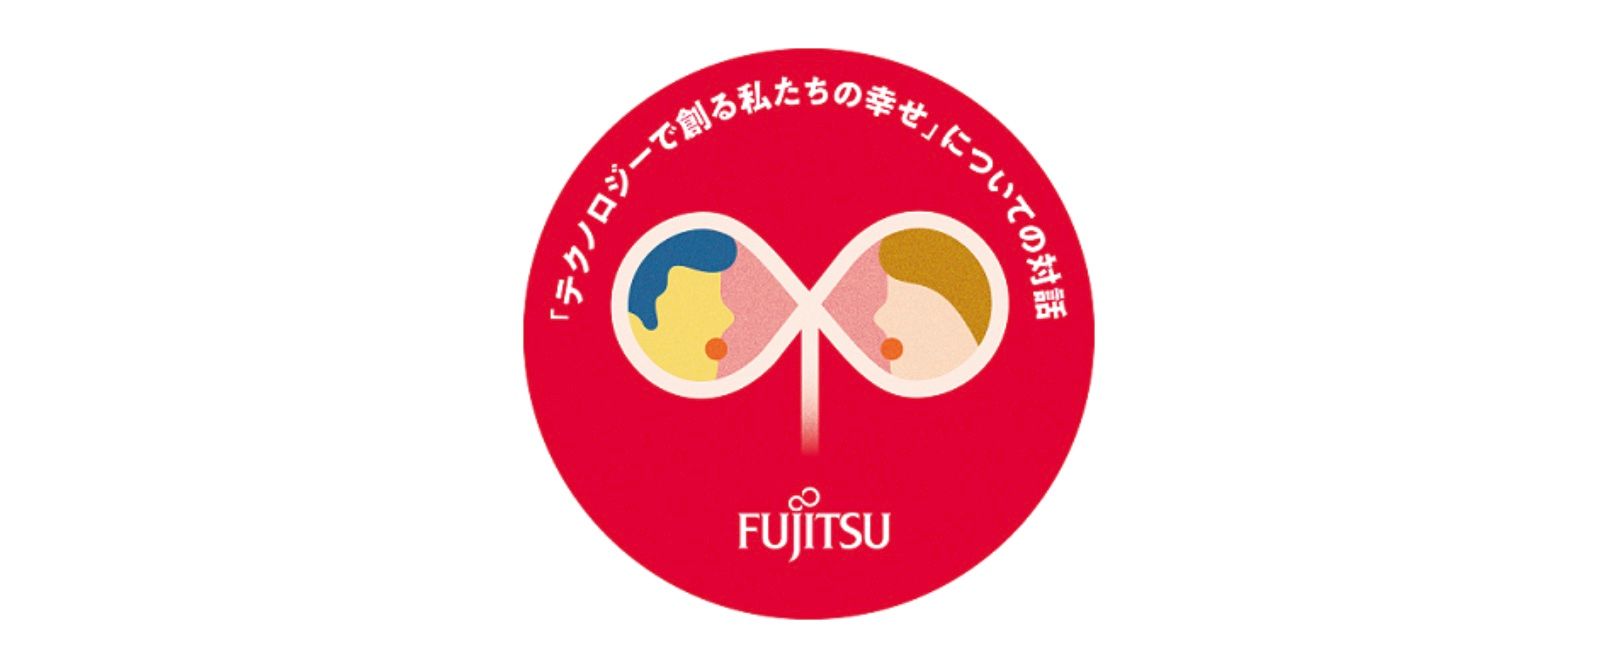 فوجیتسو در فعالیت هایی برای گوش دادن به صدای نسل های آینده به منظور ارتقای رفاه اجتماعی در ژاپن شرکت می کند.